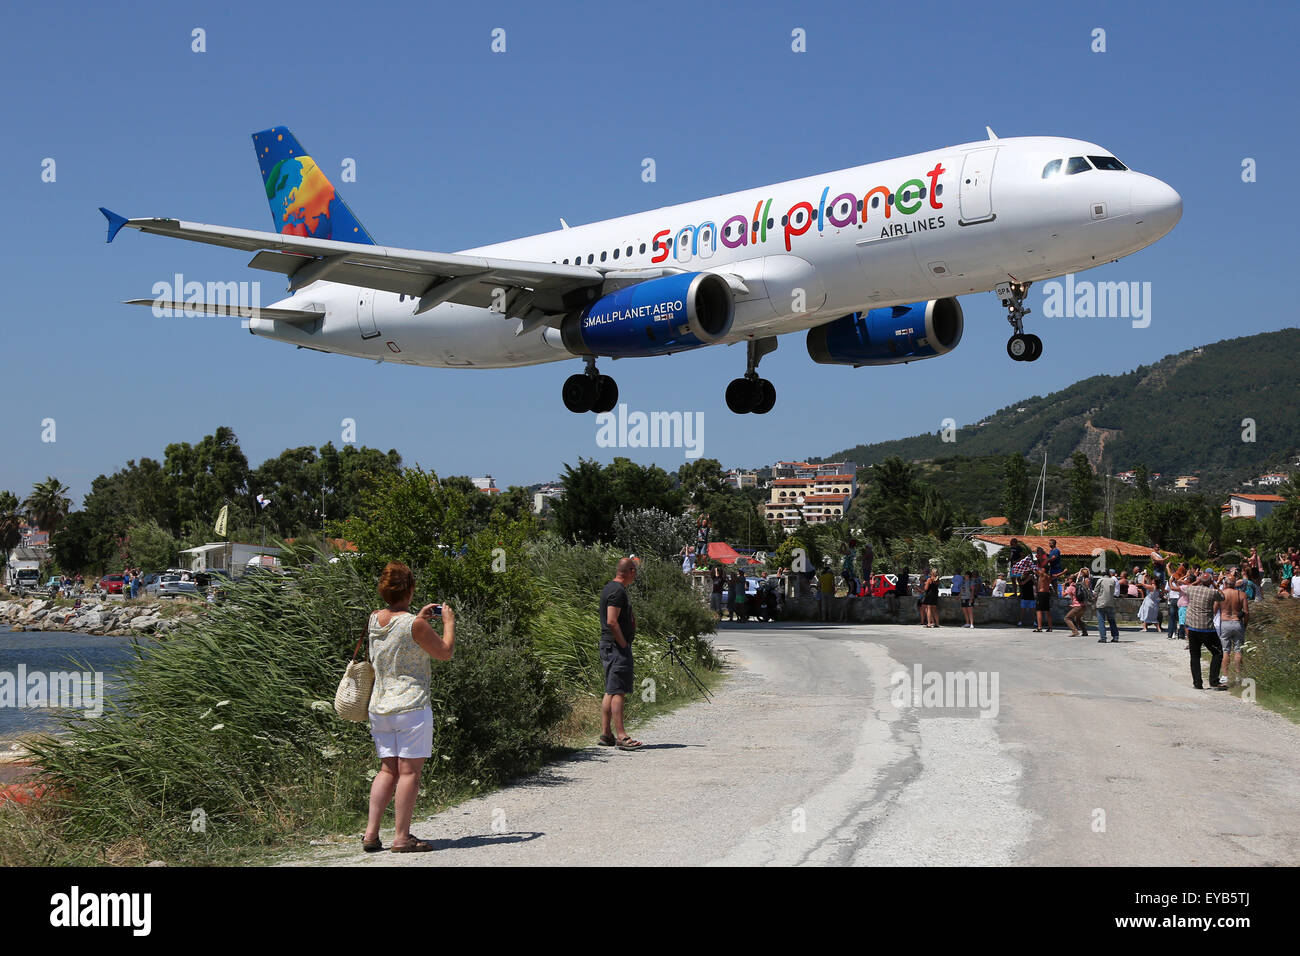 Skiathos, Grèce - 26 juin 2015 : A Small Planet Airlines Airbus A320 avec l'enregistrement LY-SPA proche de l'aéroport de Skiathos Banque D'Images